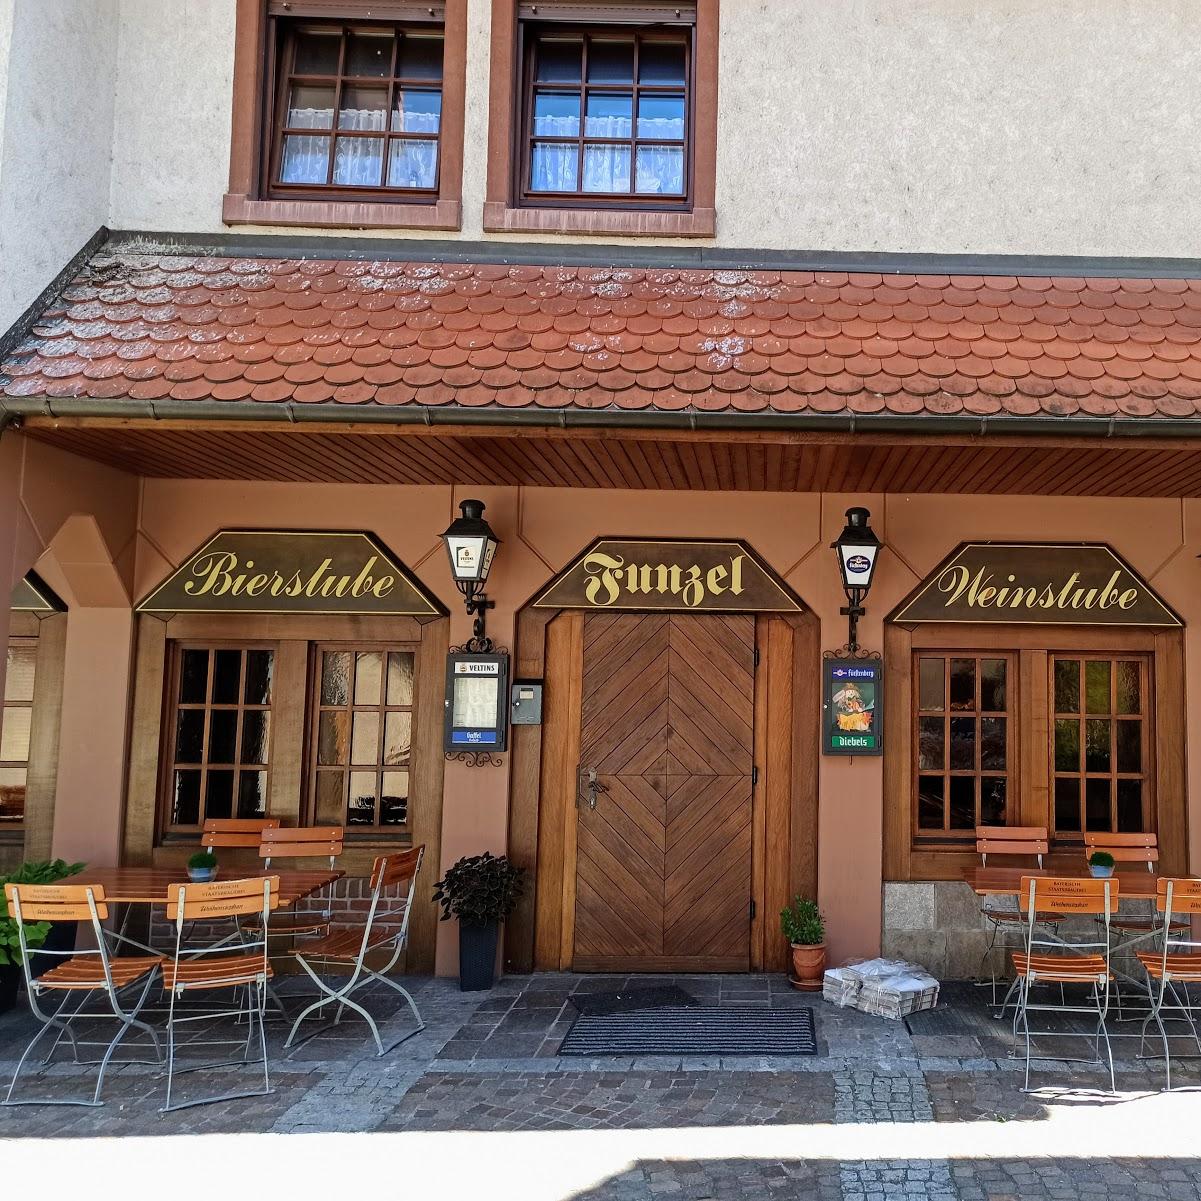 Restaurant "Bier- und Weinstube Funzel" in Kappelrodeck